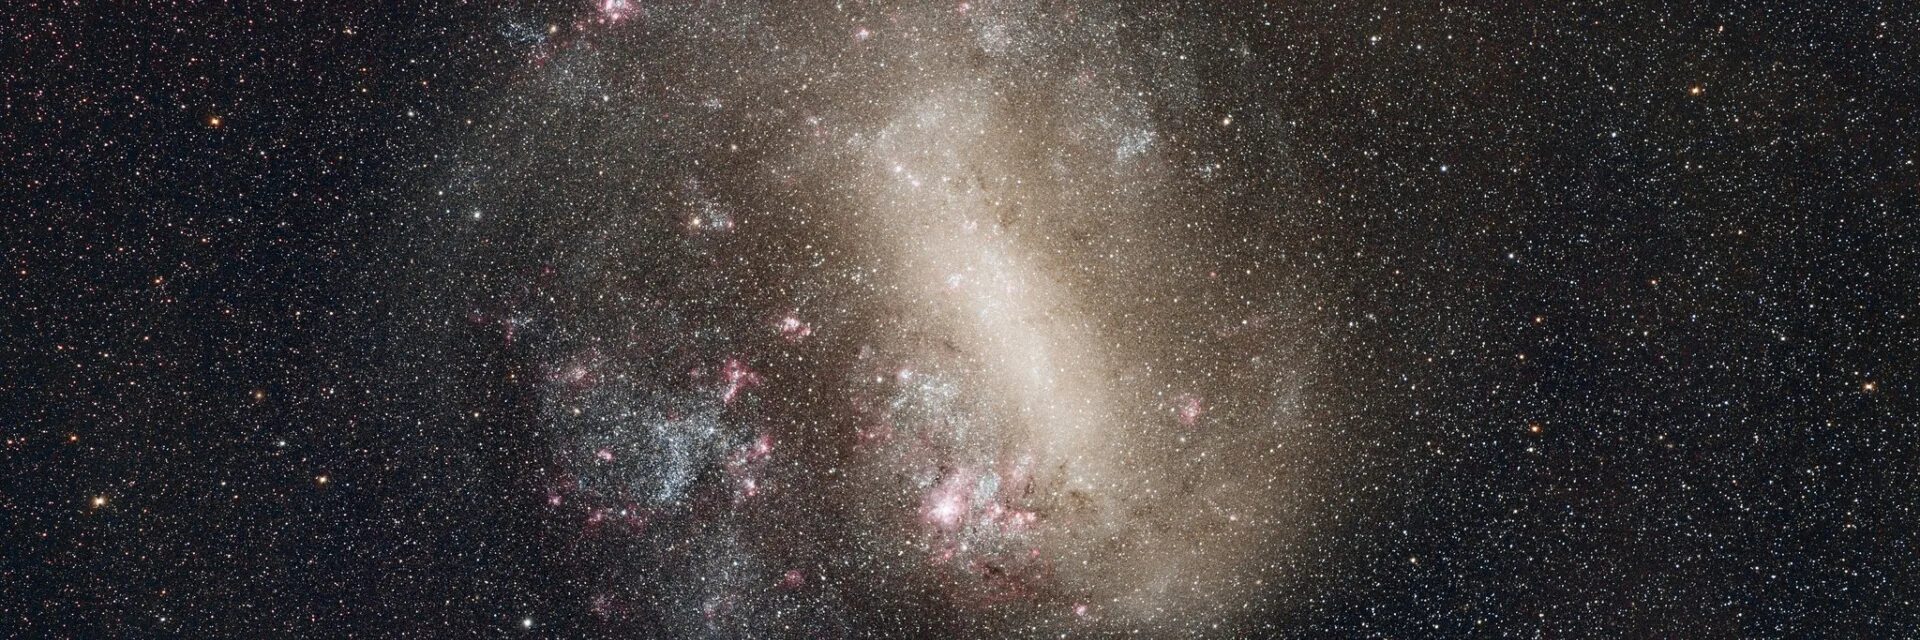 Малое Магелланово облако Галактика Млечный путь. Карликовая BCG-Галактика. Большое Магеллановое облако. Космос мало звезд.